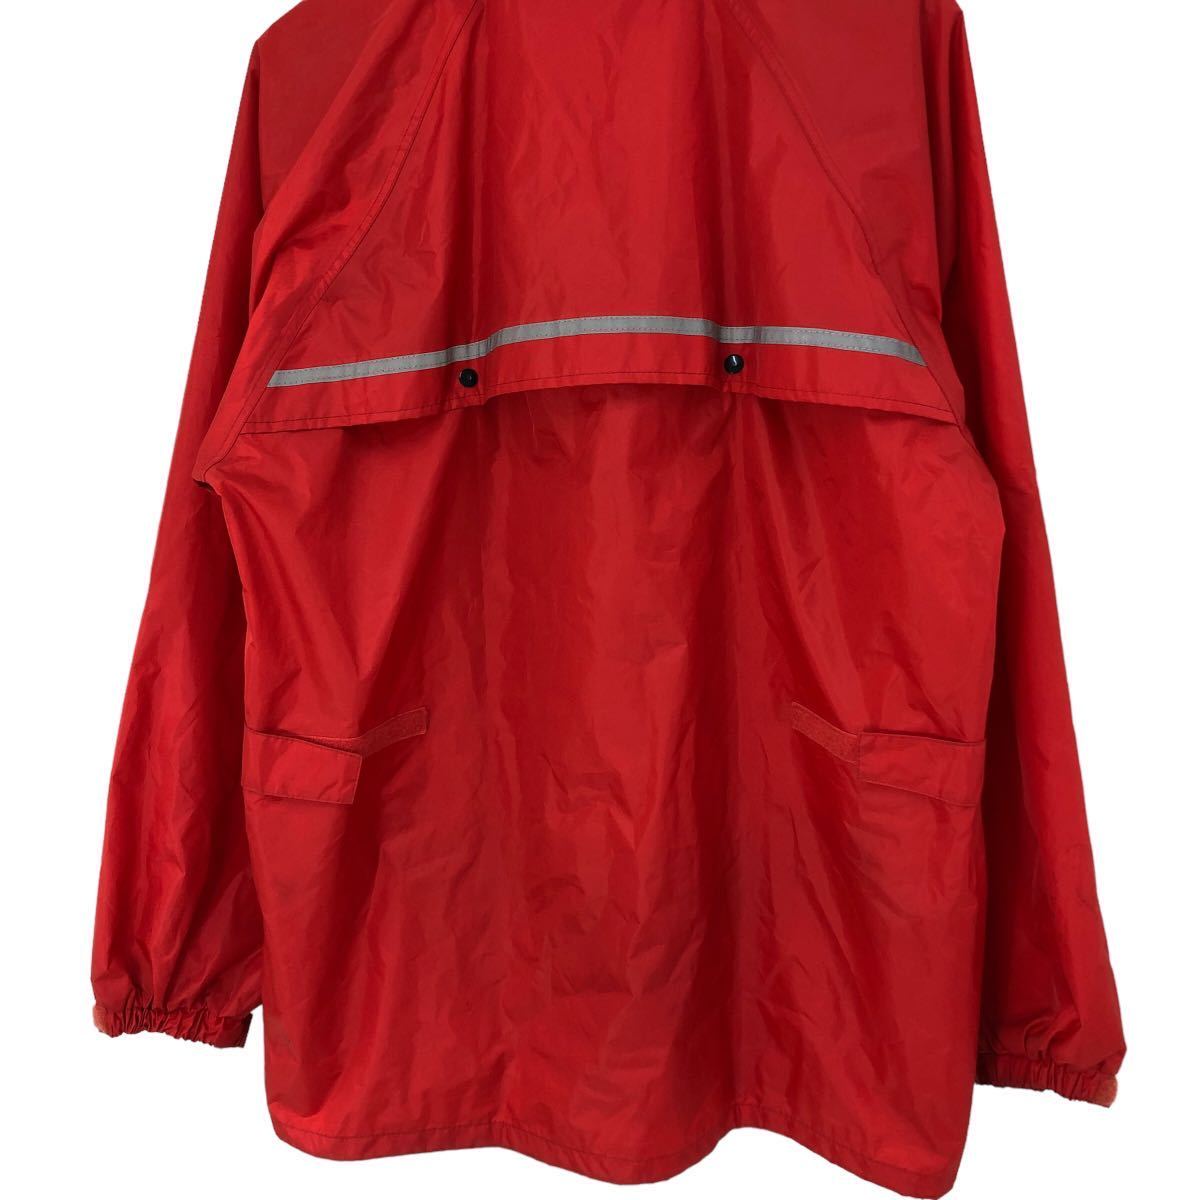 H652③ 大きいサイズ KOMINE コミネ レインウェア ジャケット 上着 赤系 バイクウェア PVCコーティング メンズ XL_画像6